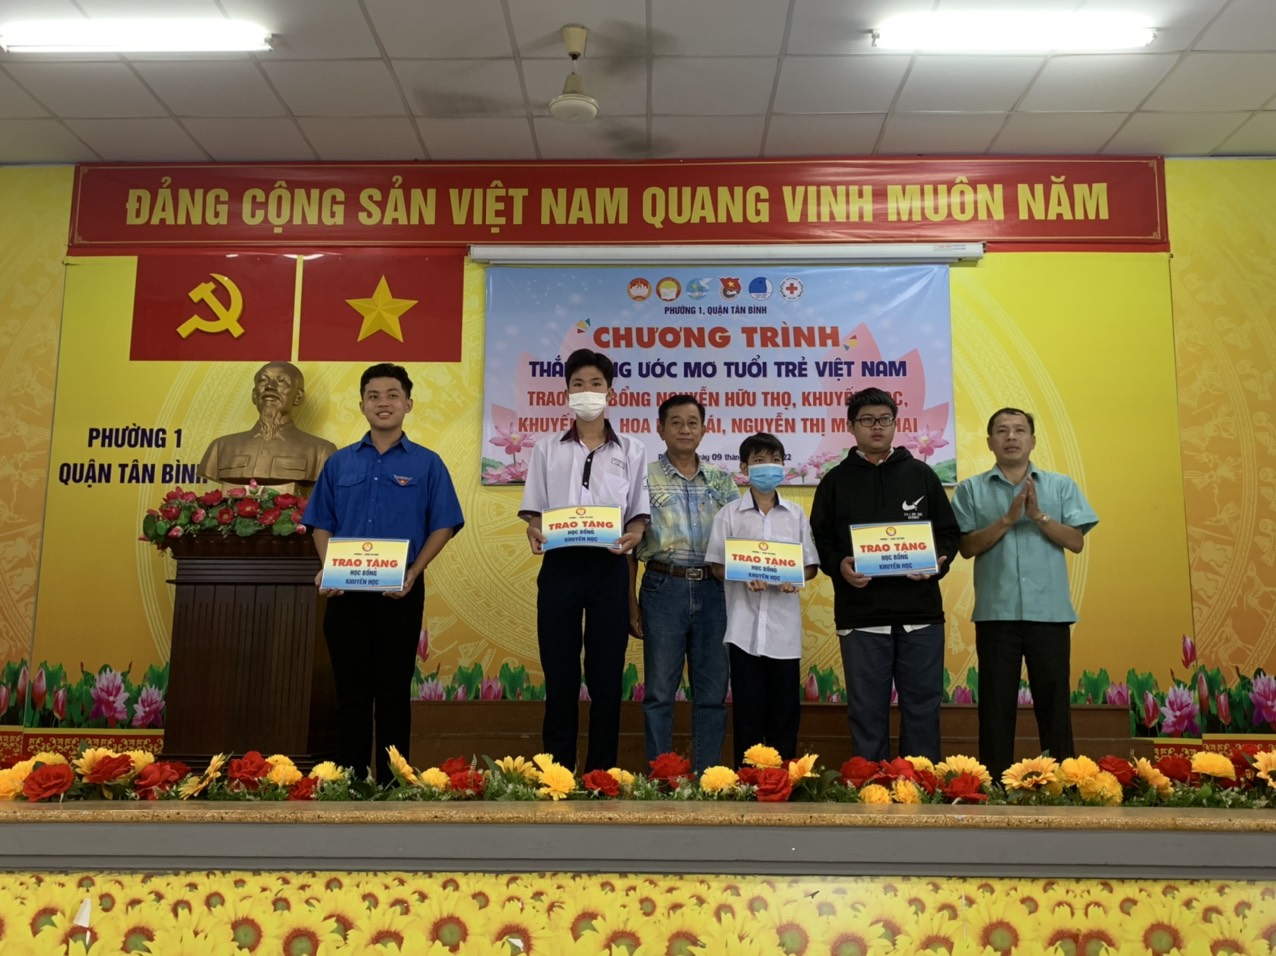 Phường 1 tổ chức chương trình “Thắp sáng ước mơ tuổi trẻ Việt Nam”